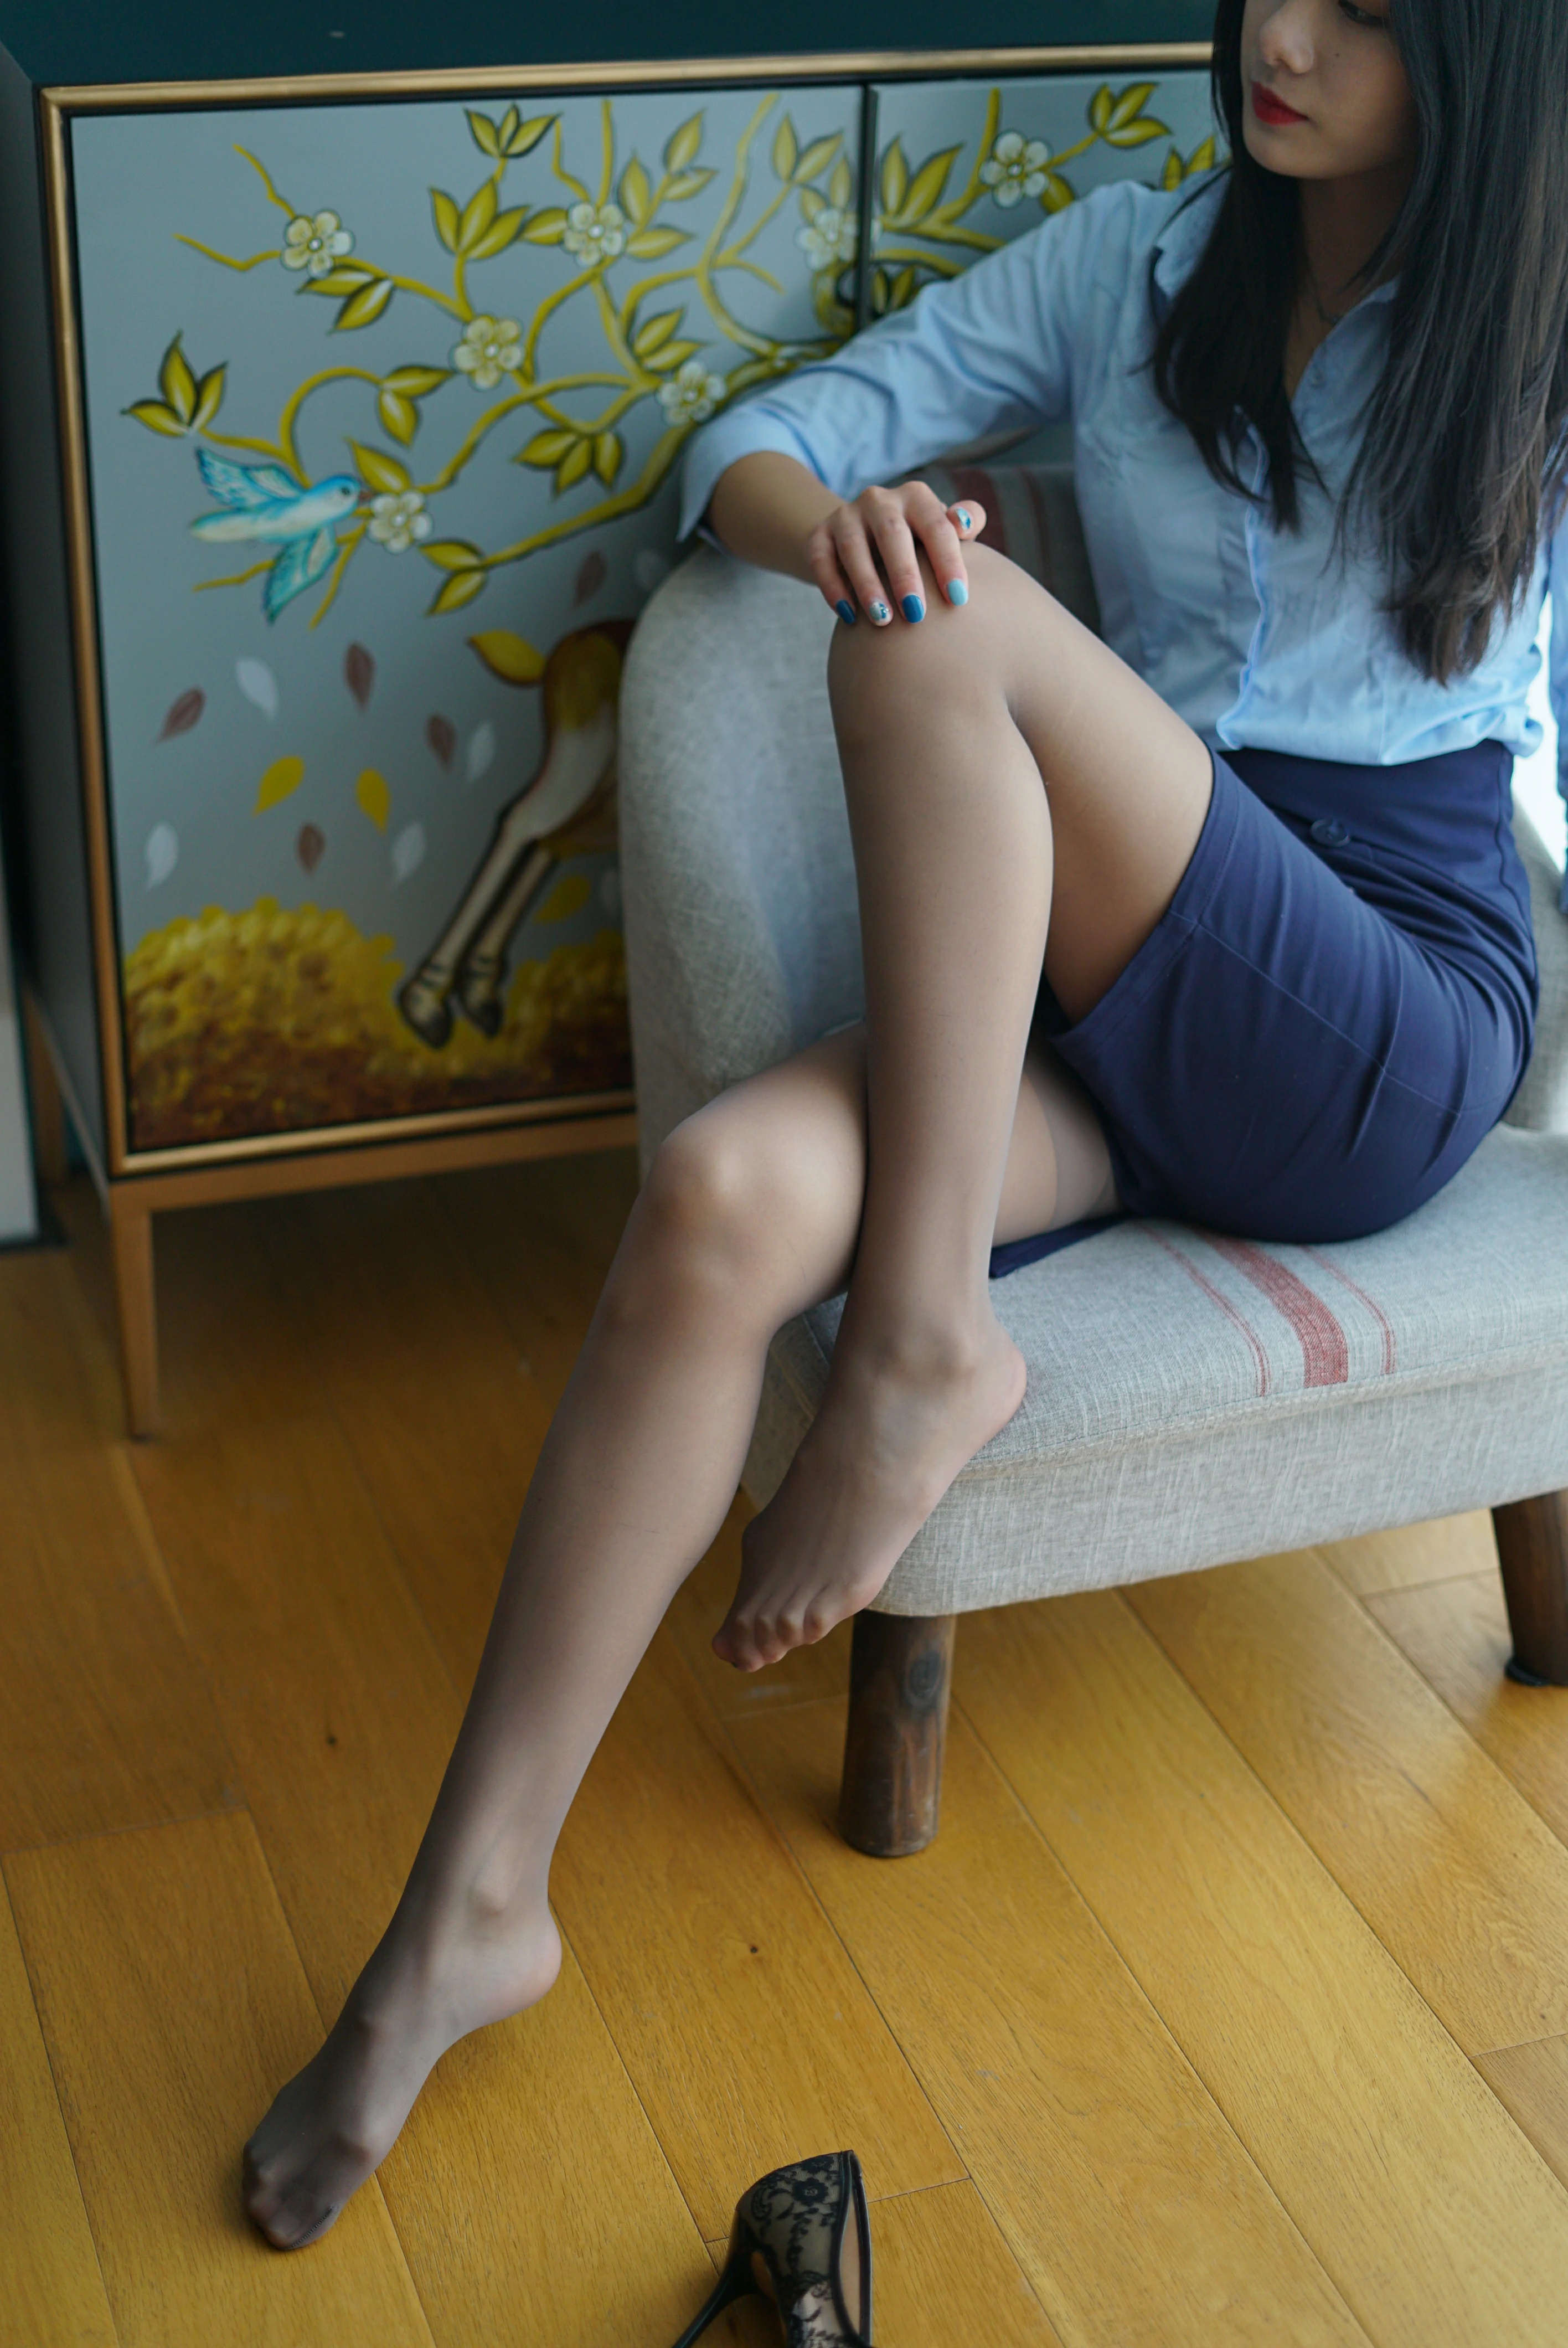 [壹吻映画]YW009 《蓝色职业装》 梦梦 淡蓝色衬衫与短裙加黑丝美腿性感写真集,0003